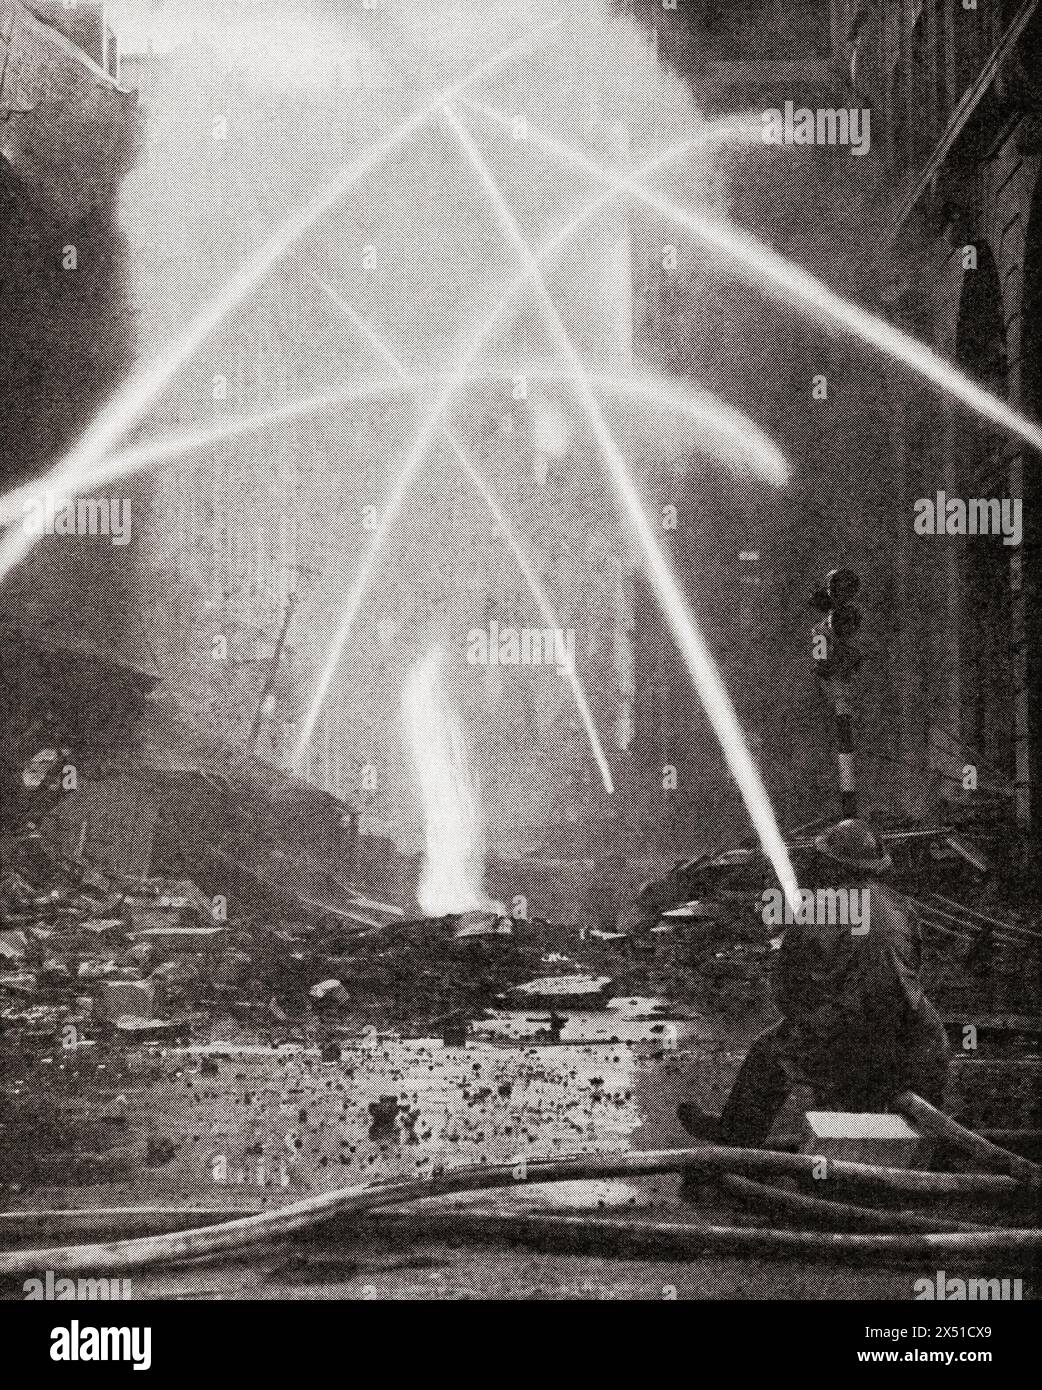 Feuerwehrmänner bekämpfen eine Stadt nach einem Bombenangriff auf London 1940 während des Zweiten Weltkriegs. Aus dem Krieg in Bildern, 2. Jahr. Stockfoto